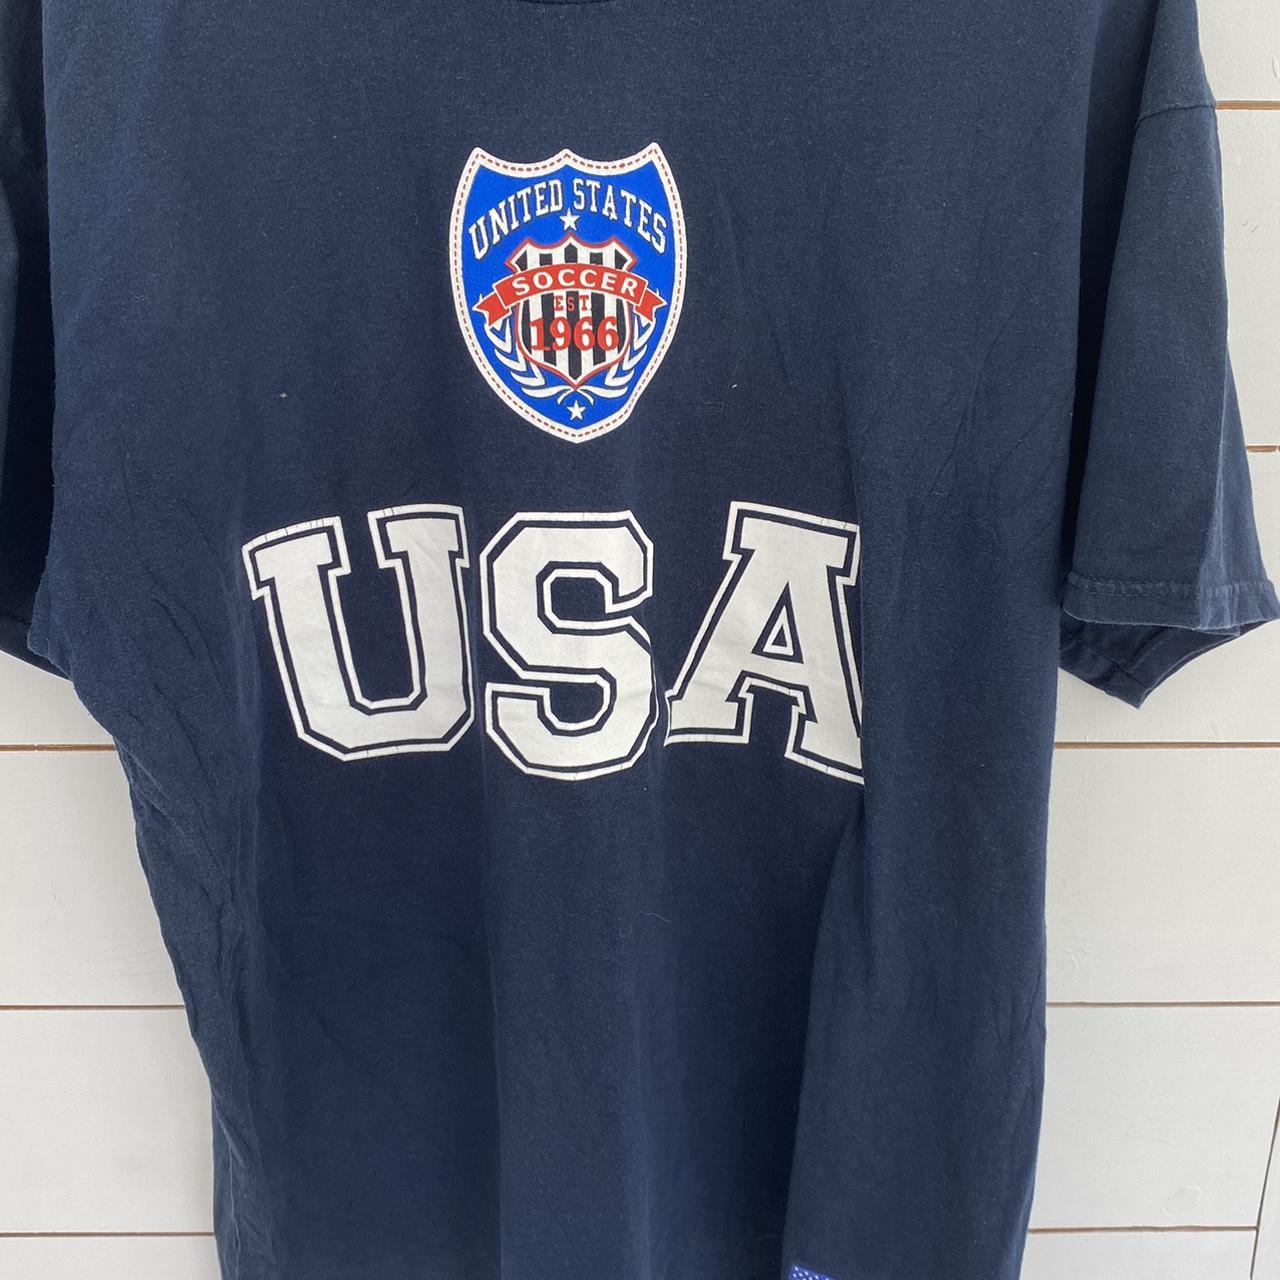 Vintage Tshirt USA Brand: unknown Size:... - Depop